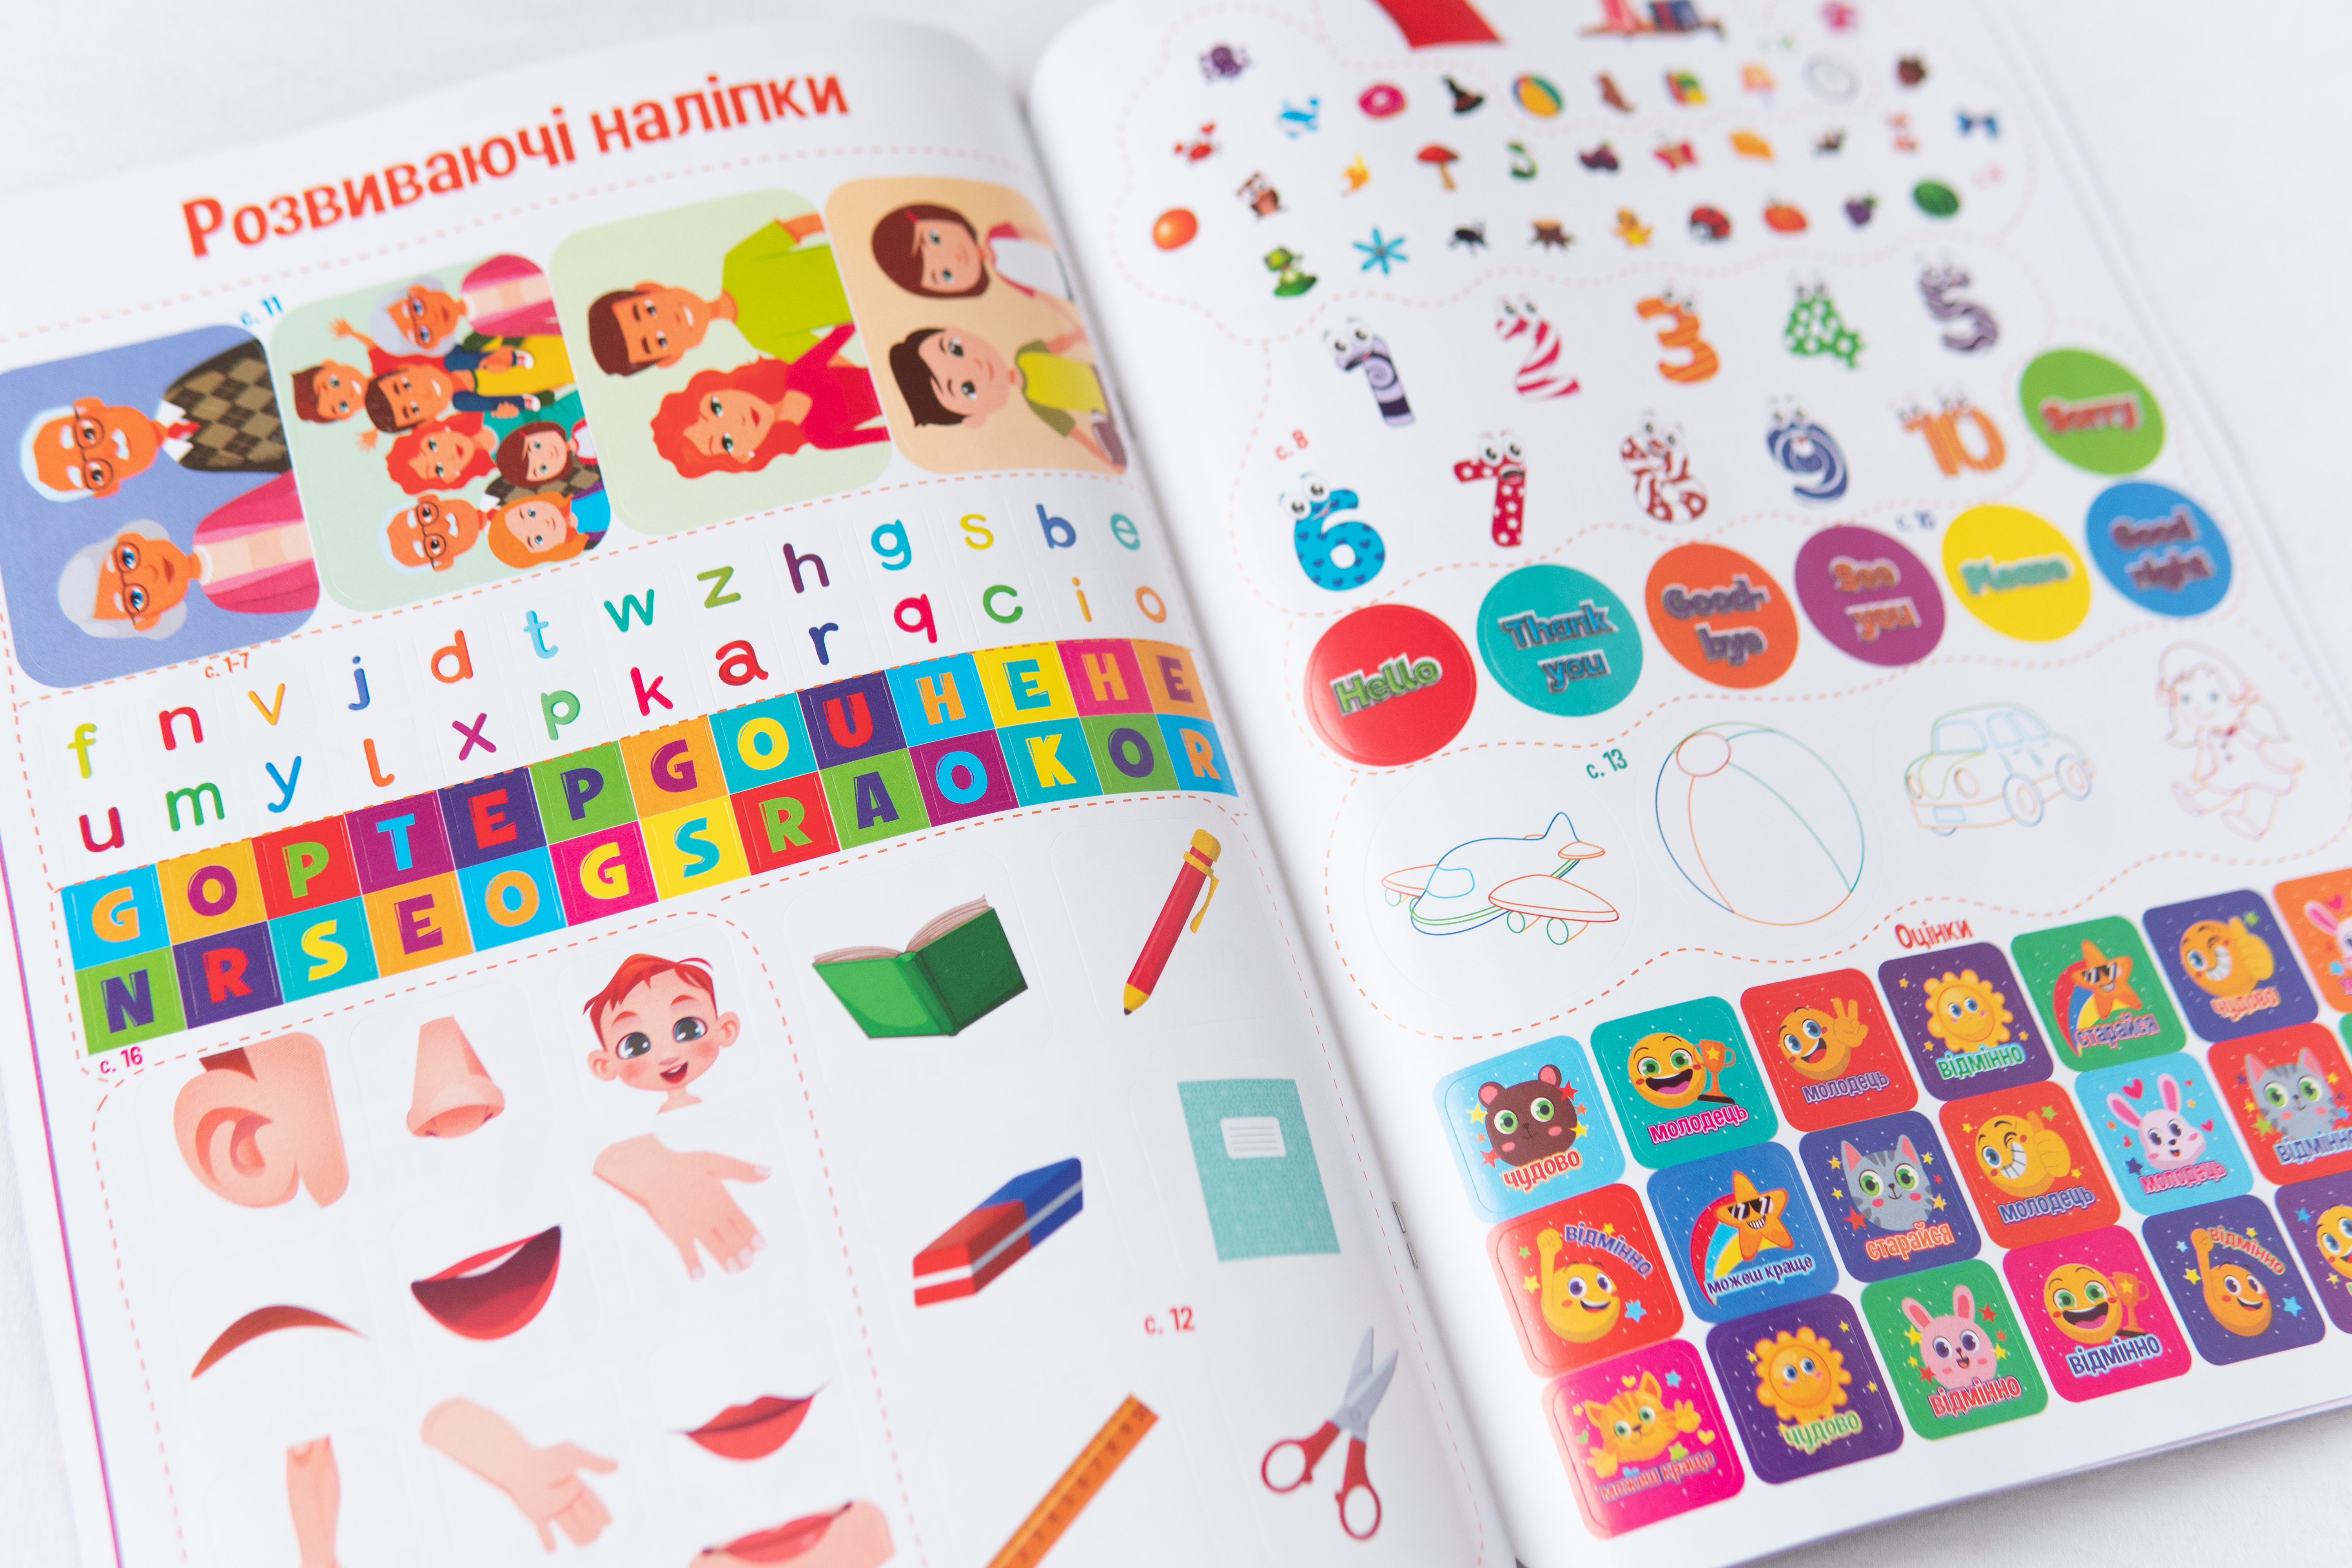 Lern-Tablet Englisch für Kleinkinder - Vorbereitung auf die Schule/Lern-Tablet Englisch für Kleinkinder - Vorbereitung auf die Schule